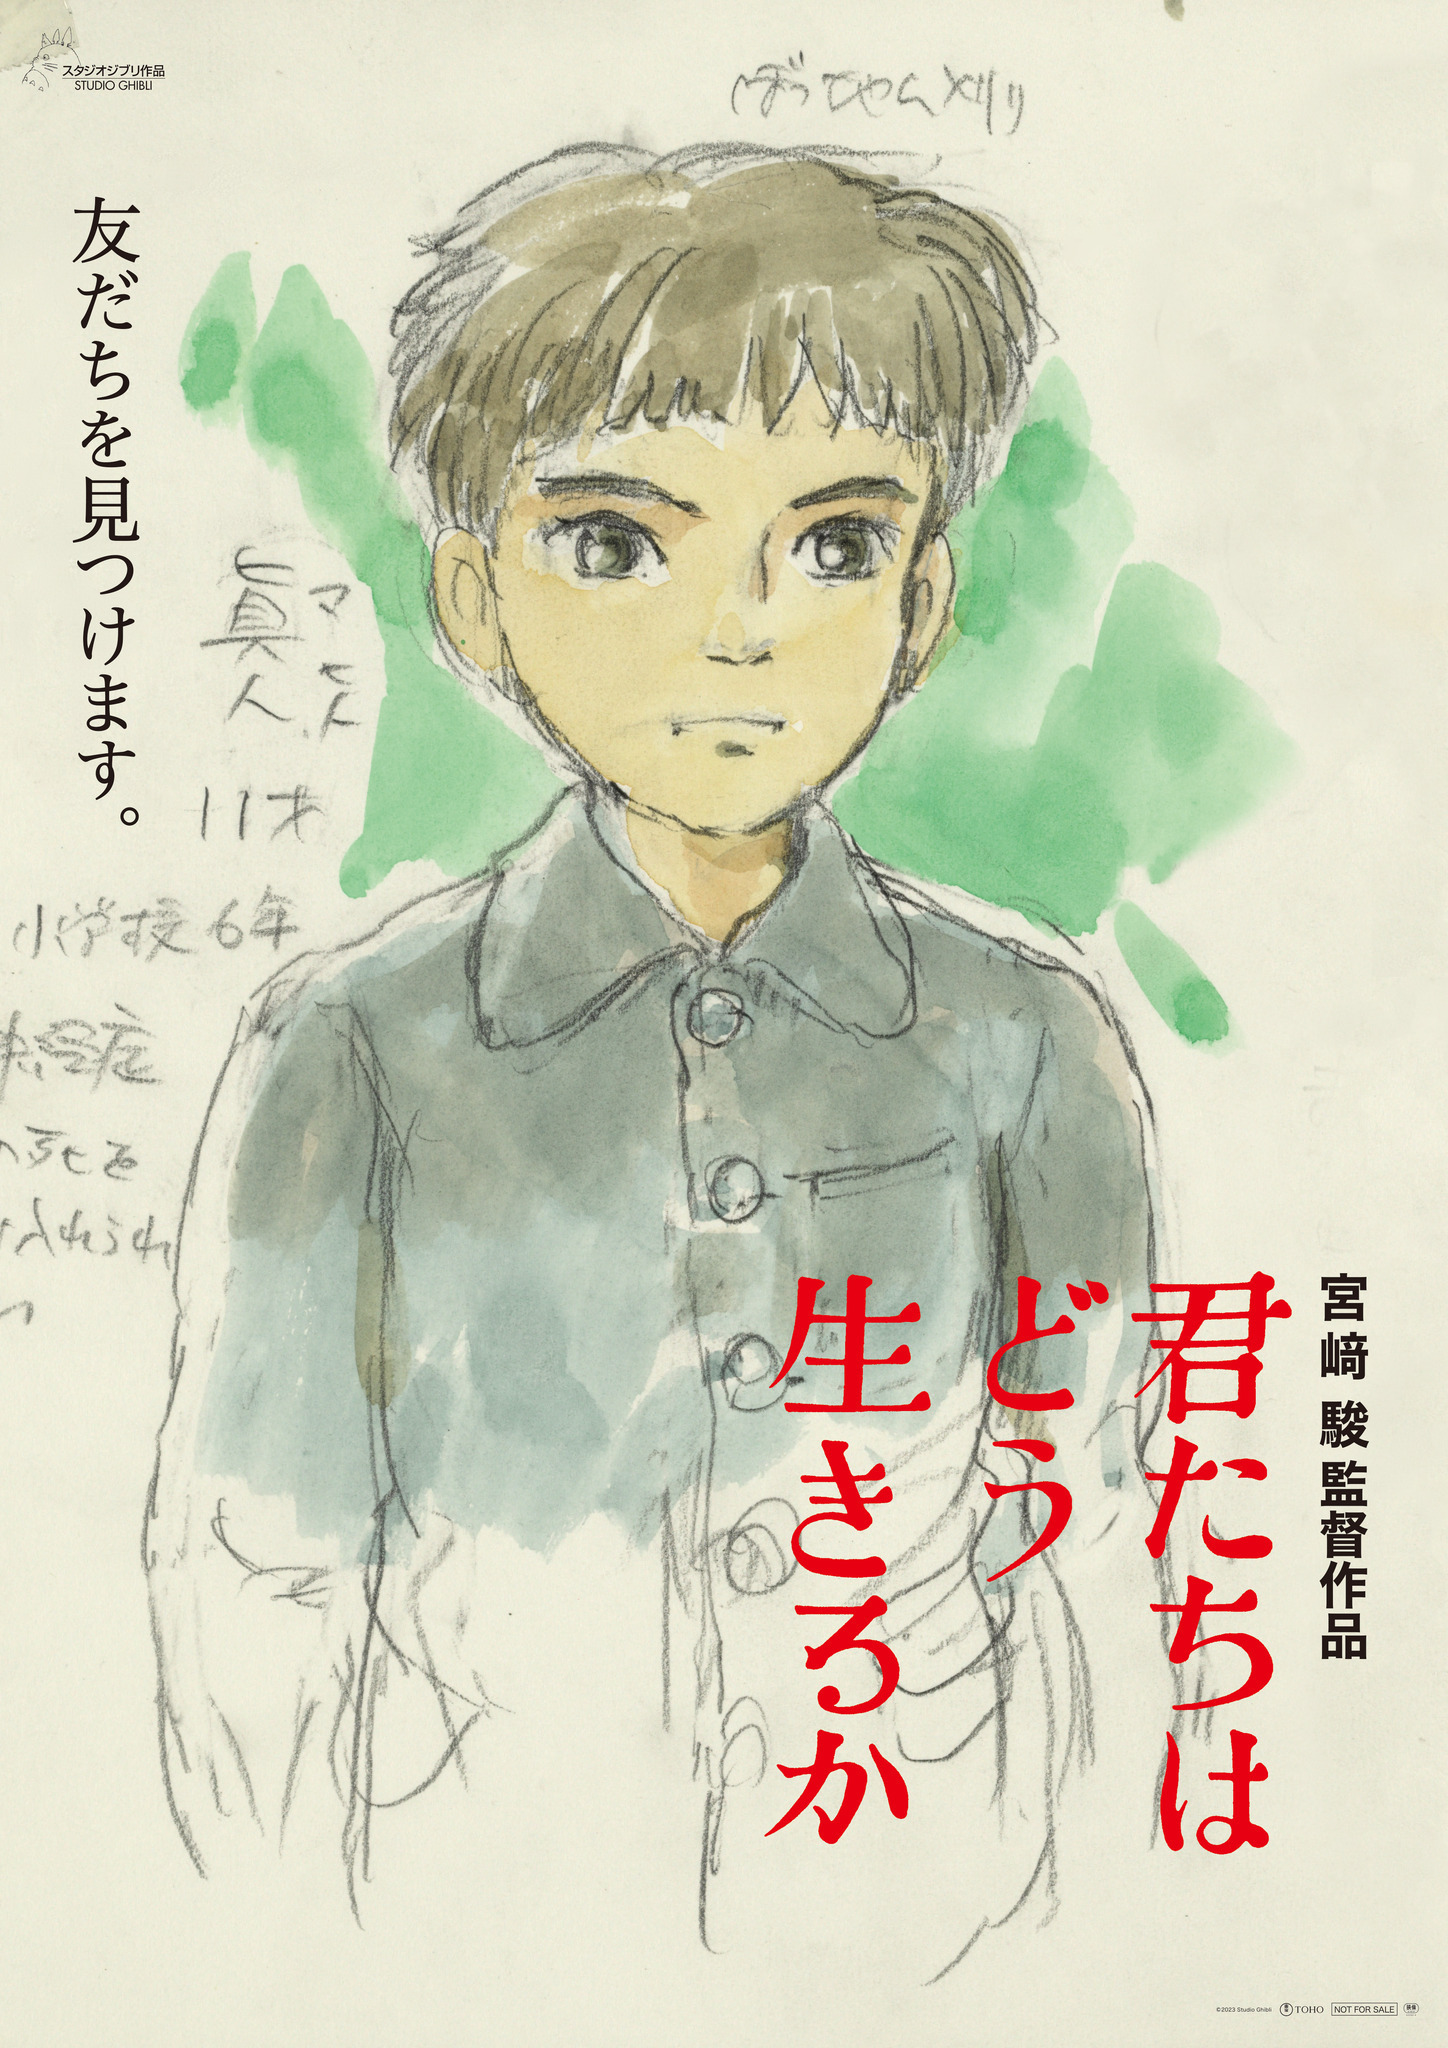 スタジオジブリ「君たちはどう生きるか」宮崎駿監督直筆のイメージ